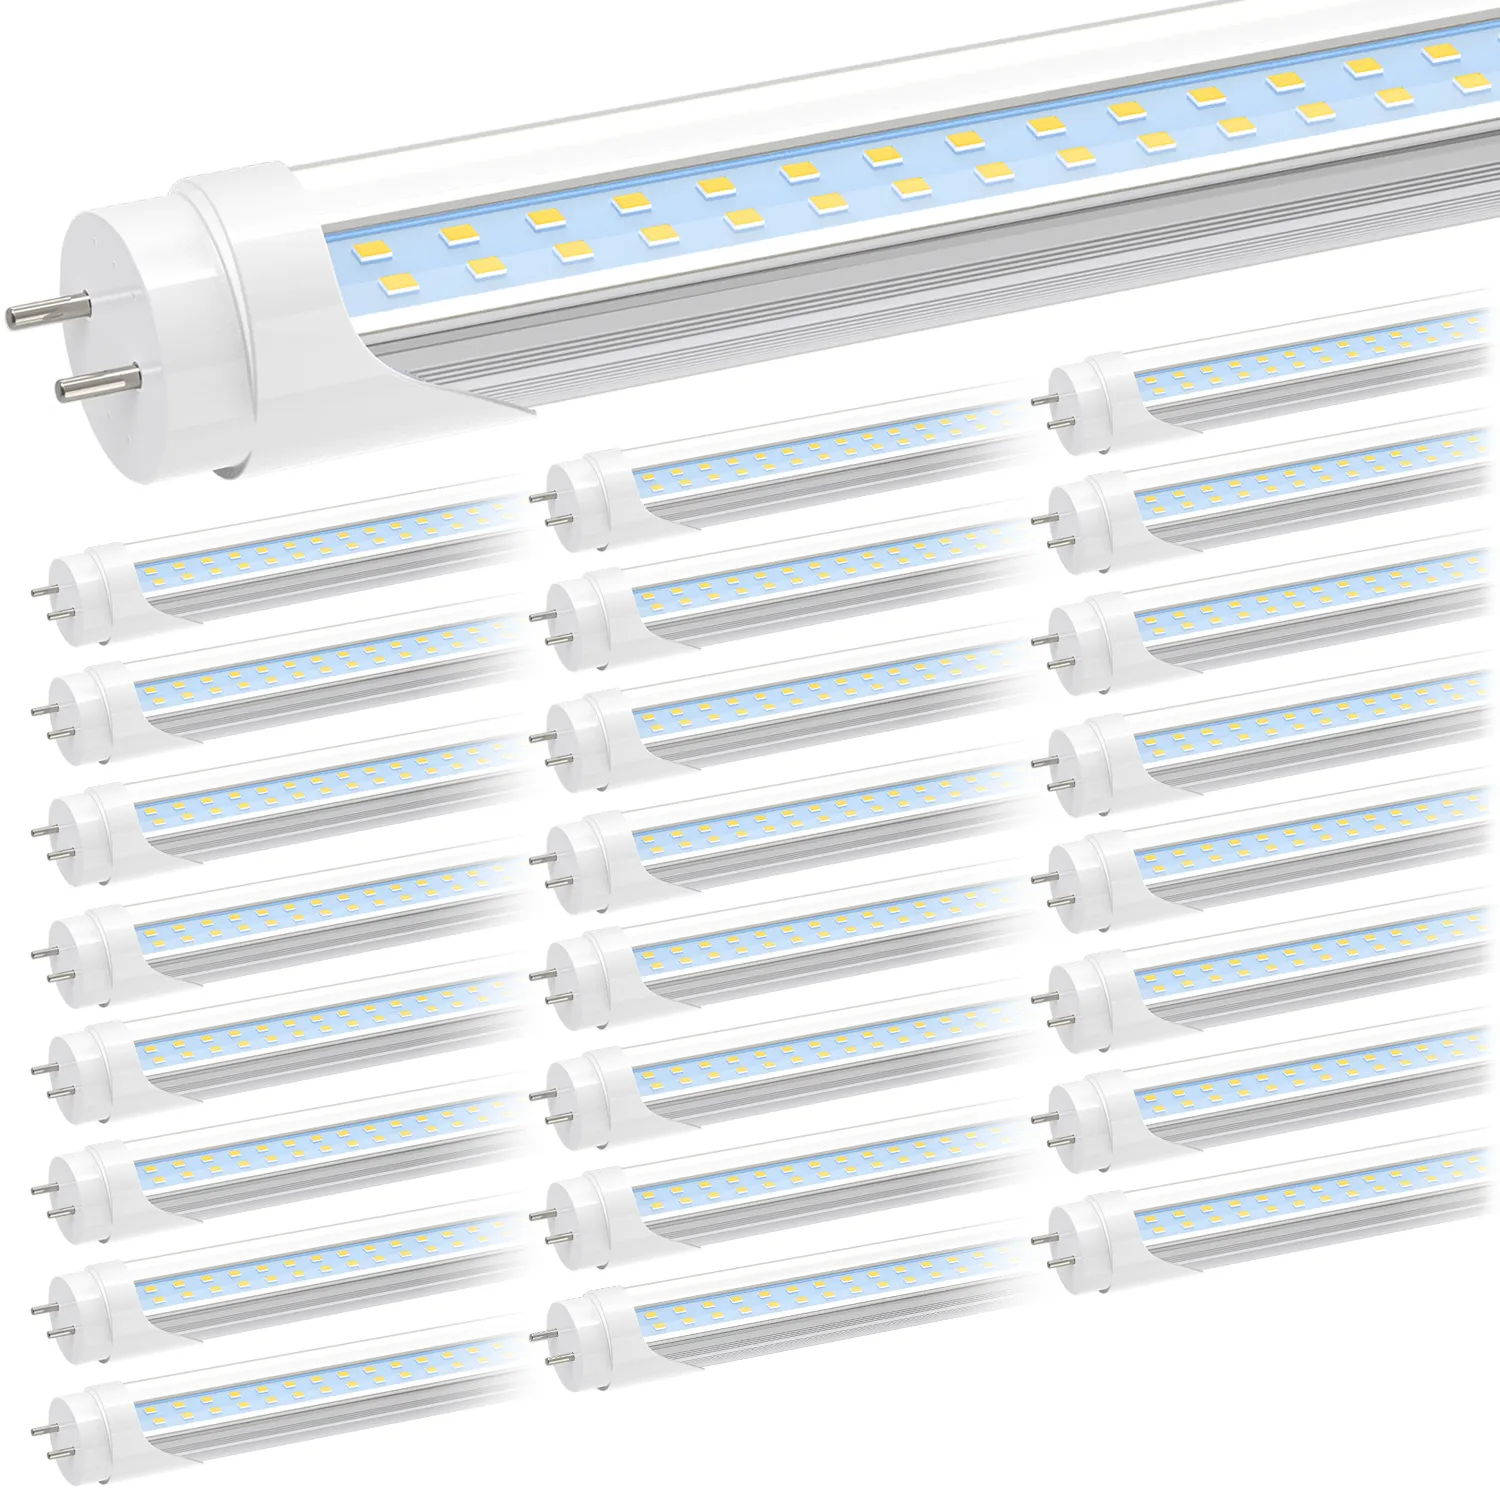 US STOCK T8 LED Lampadine 4 piedi 28W 6000K luci a tubo bianco freddo 4FT lampadina fluorescente sostituzione zavorra Bypass doppia alimentazione